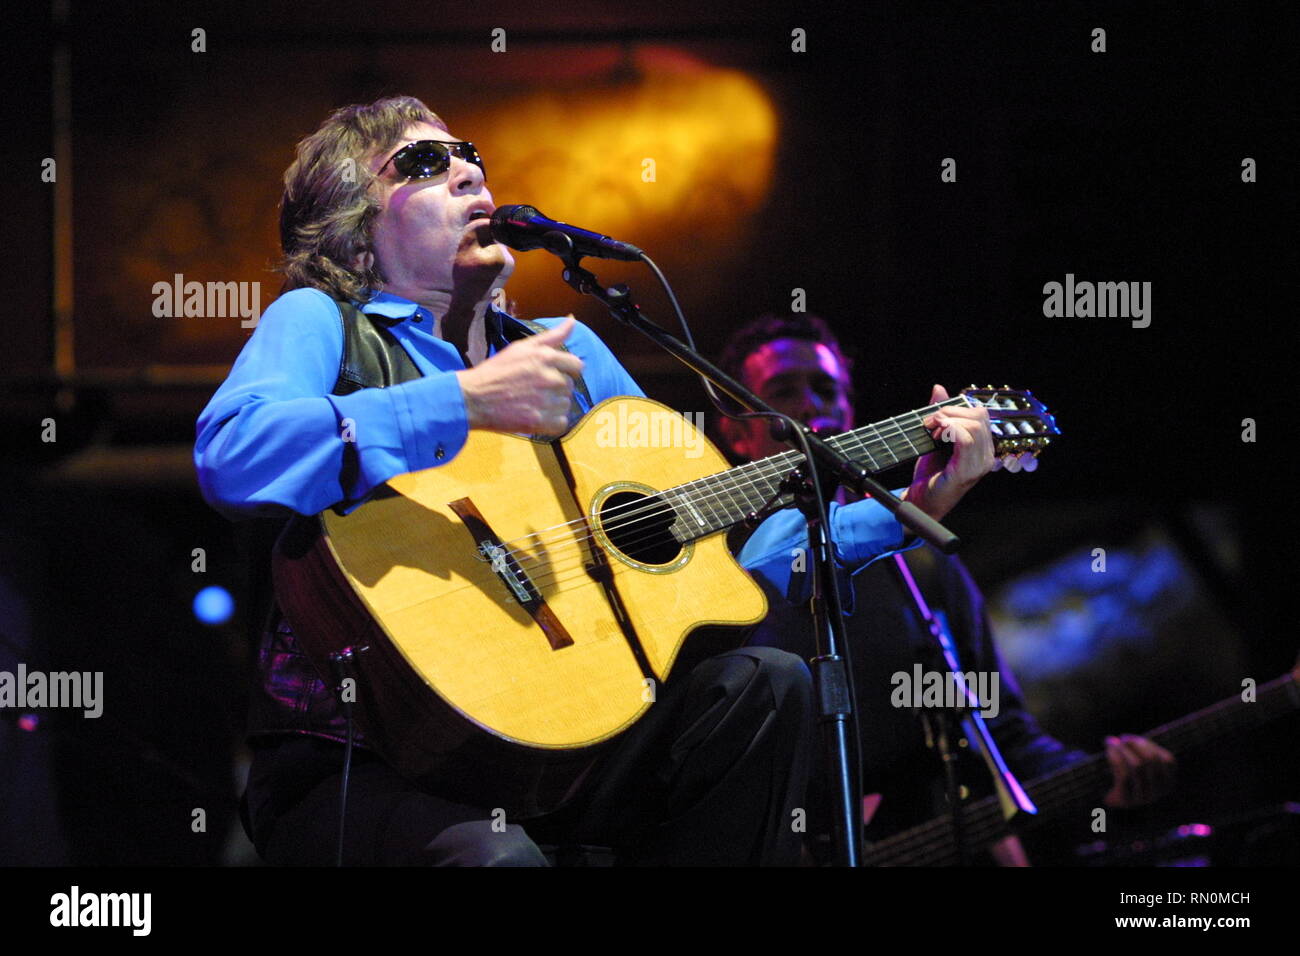 Puerto Rican Sänger und virtuoser Gitarrist, JosŽFeliciano, geboren dauerhaft Blinden aufgrund einer angeborenen Glaukom, dargestellt auf der Bühne während einer "live"-Konzert aussehen. Stockfoto